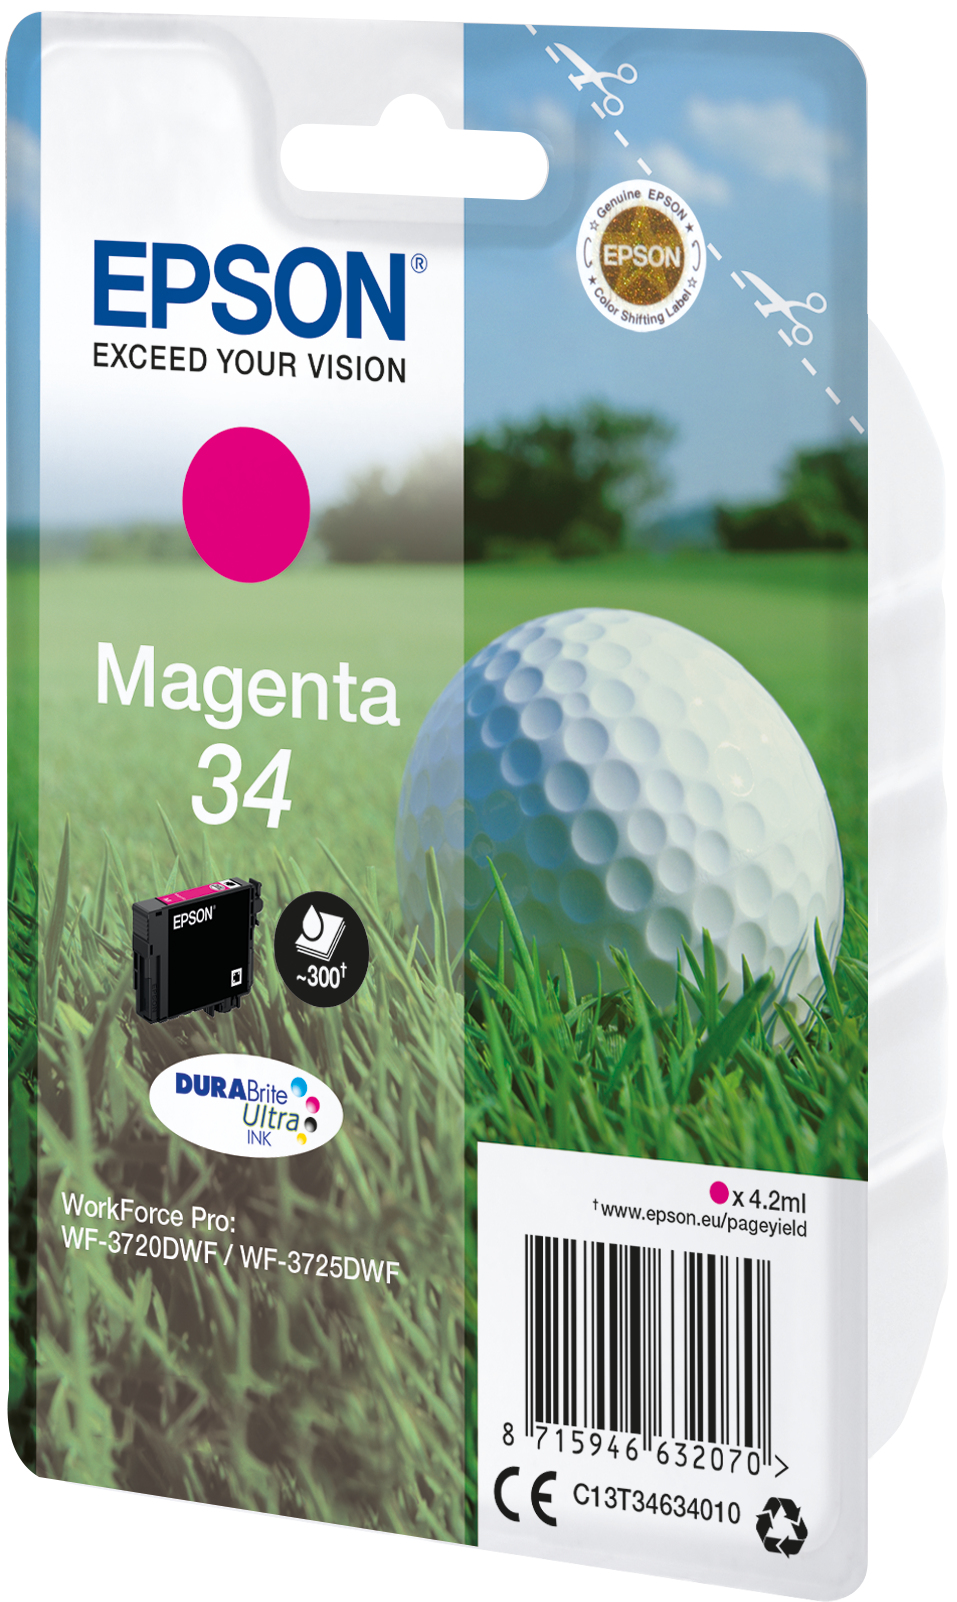 Epson Golf ball Singlepack Magenta 34 DURABrite Ultra Ink - Standardertrag - Tinte auf Pigmentbasis - 4,2 ml - 300 Seiten - 1 Stück(e)